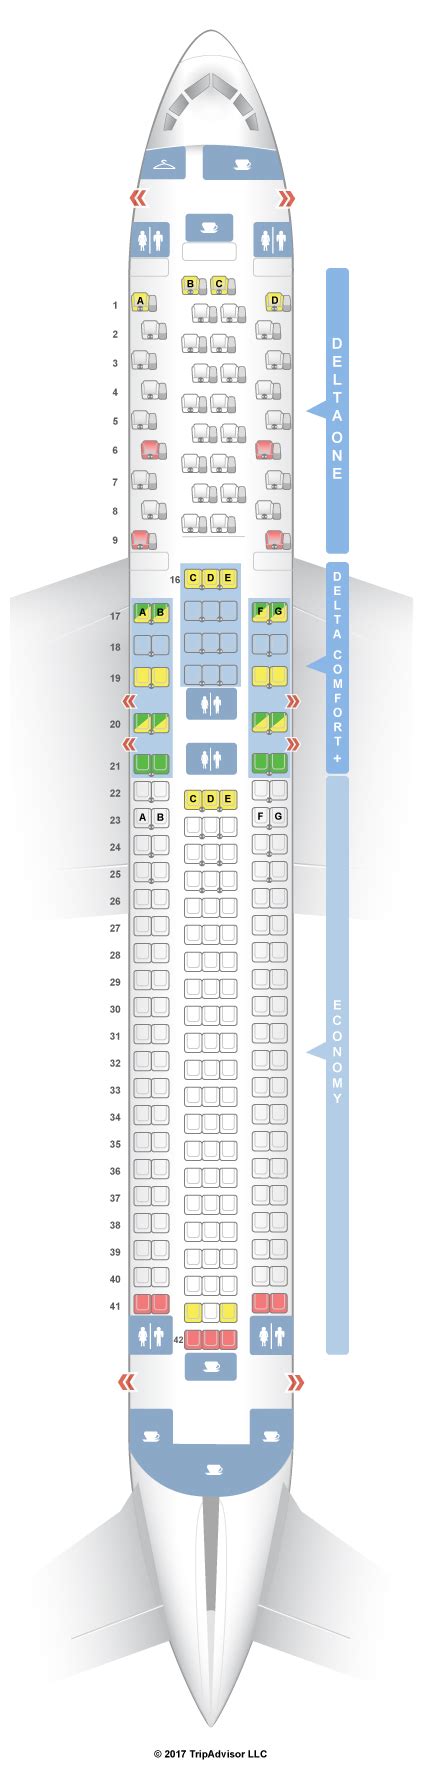 Delta seatguru 767-300. Things To Know About Delta seatguru 767-300. 